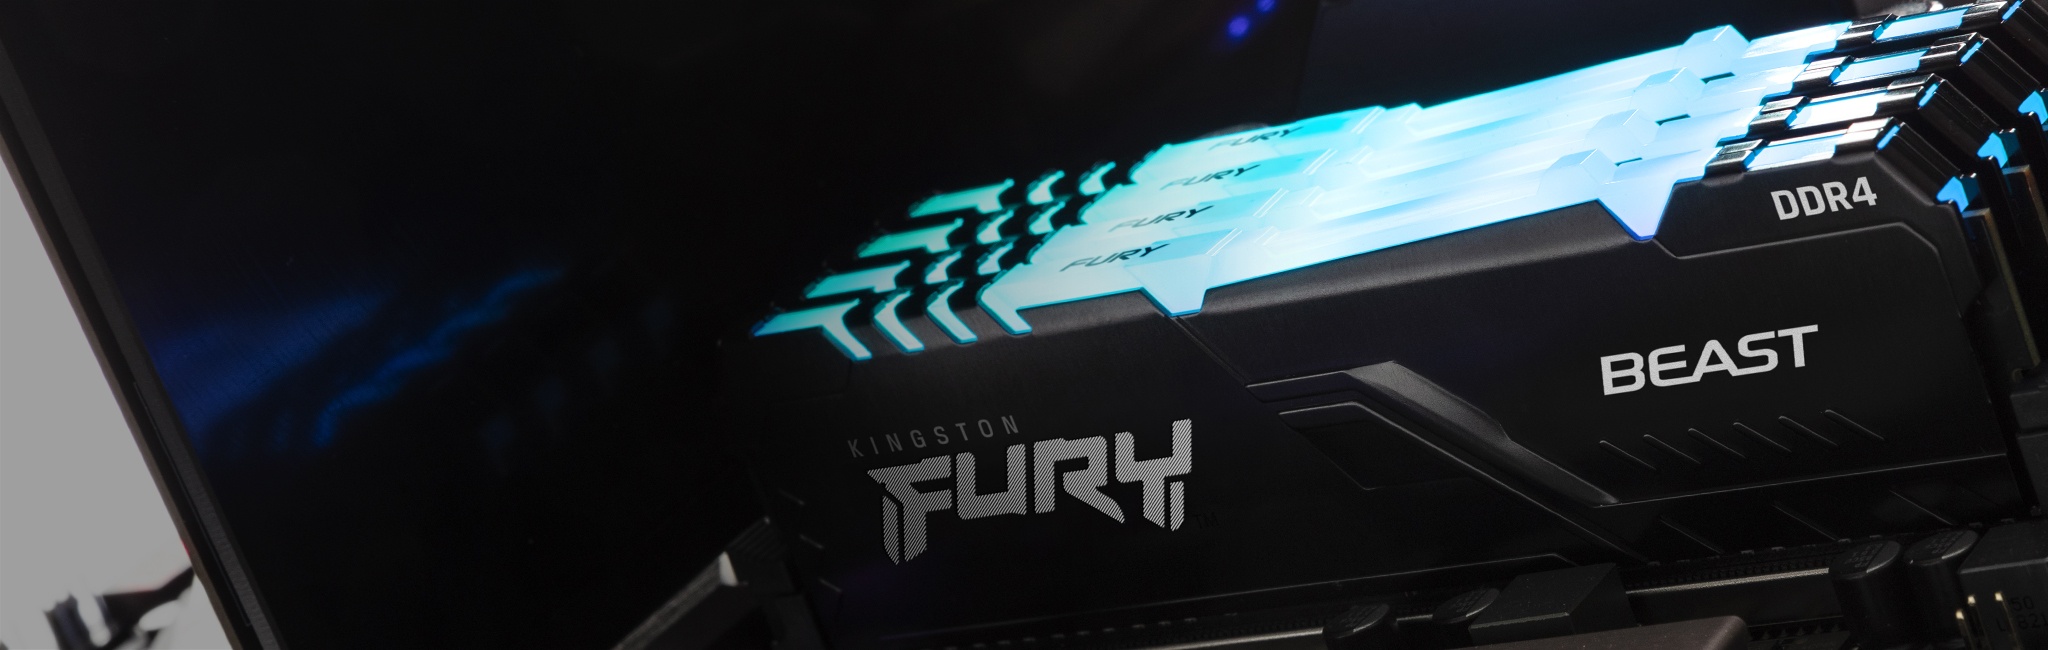 PC に取り付けられた Kingston FURY Beast RGB のモジュール上部が青く光る様子